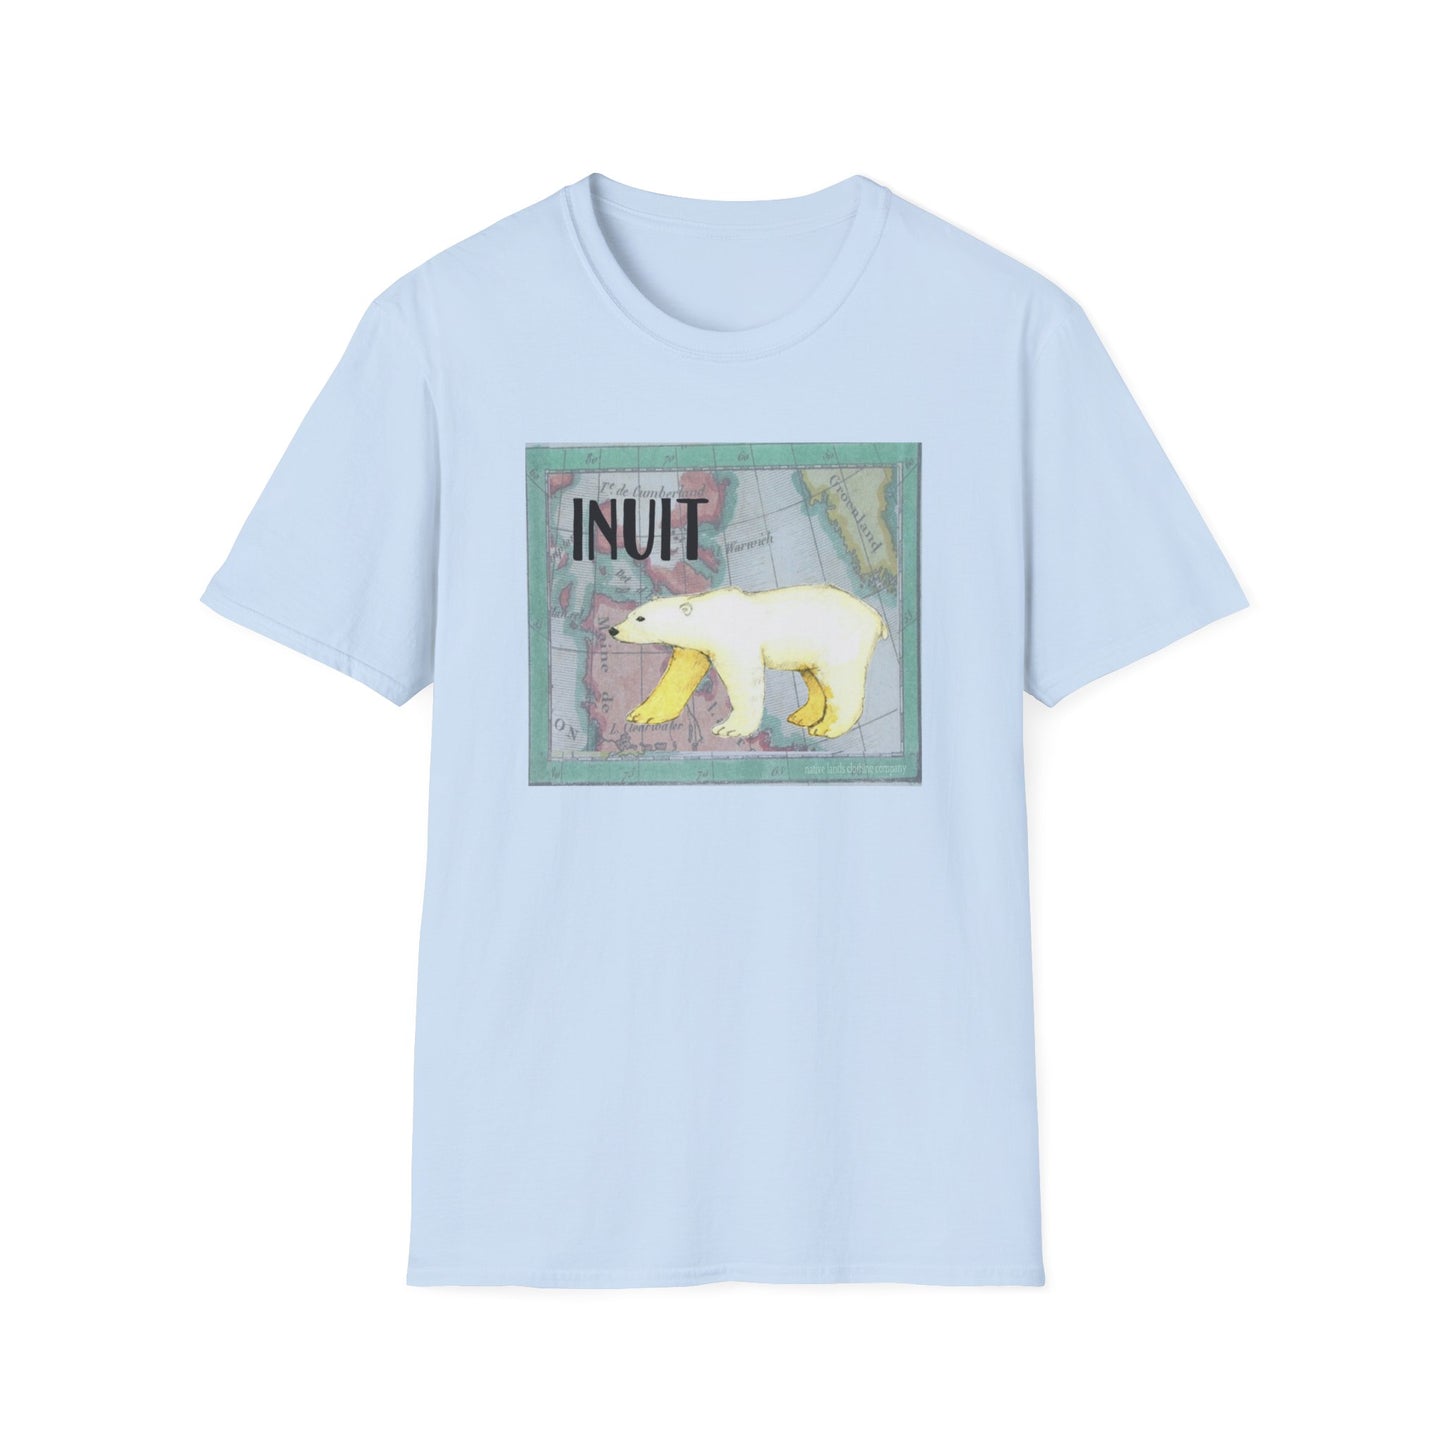 因纽特部落衬衫北极熊棉质美洲原住民